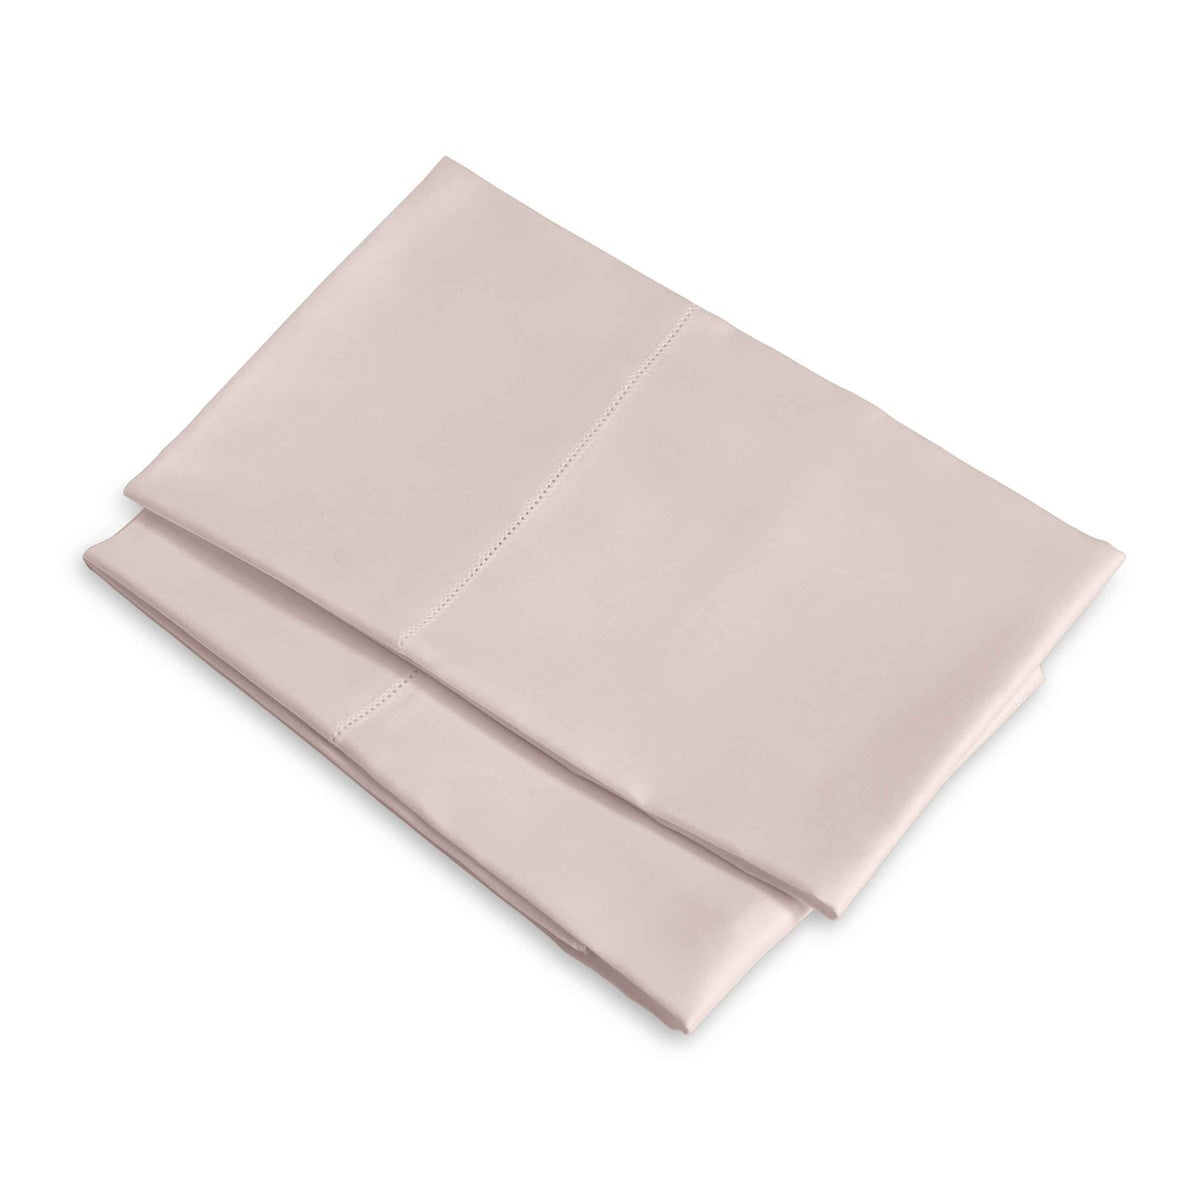 Clear Image of Signoria Raffaello Pillowcases in Rose Quartz Color